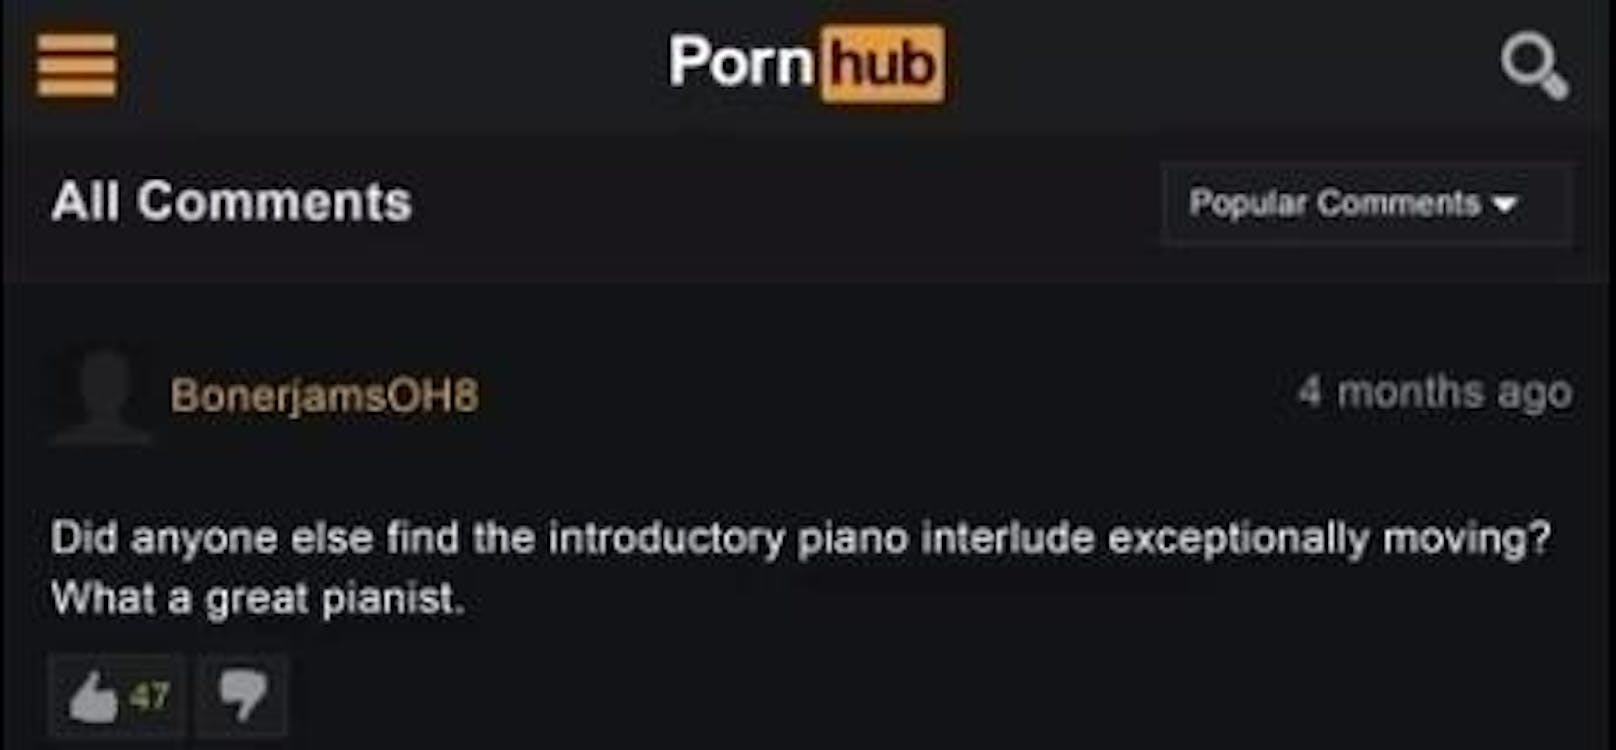 Stichwort Musik: Ein anderer Nutzer hatte offenbar Lust, ein wenig über die Intro-Musik eines Pornofilmchens zu plaudern. Das Piano zu Beginn des Videos hat es dem User offenbar sehr angetan